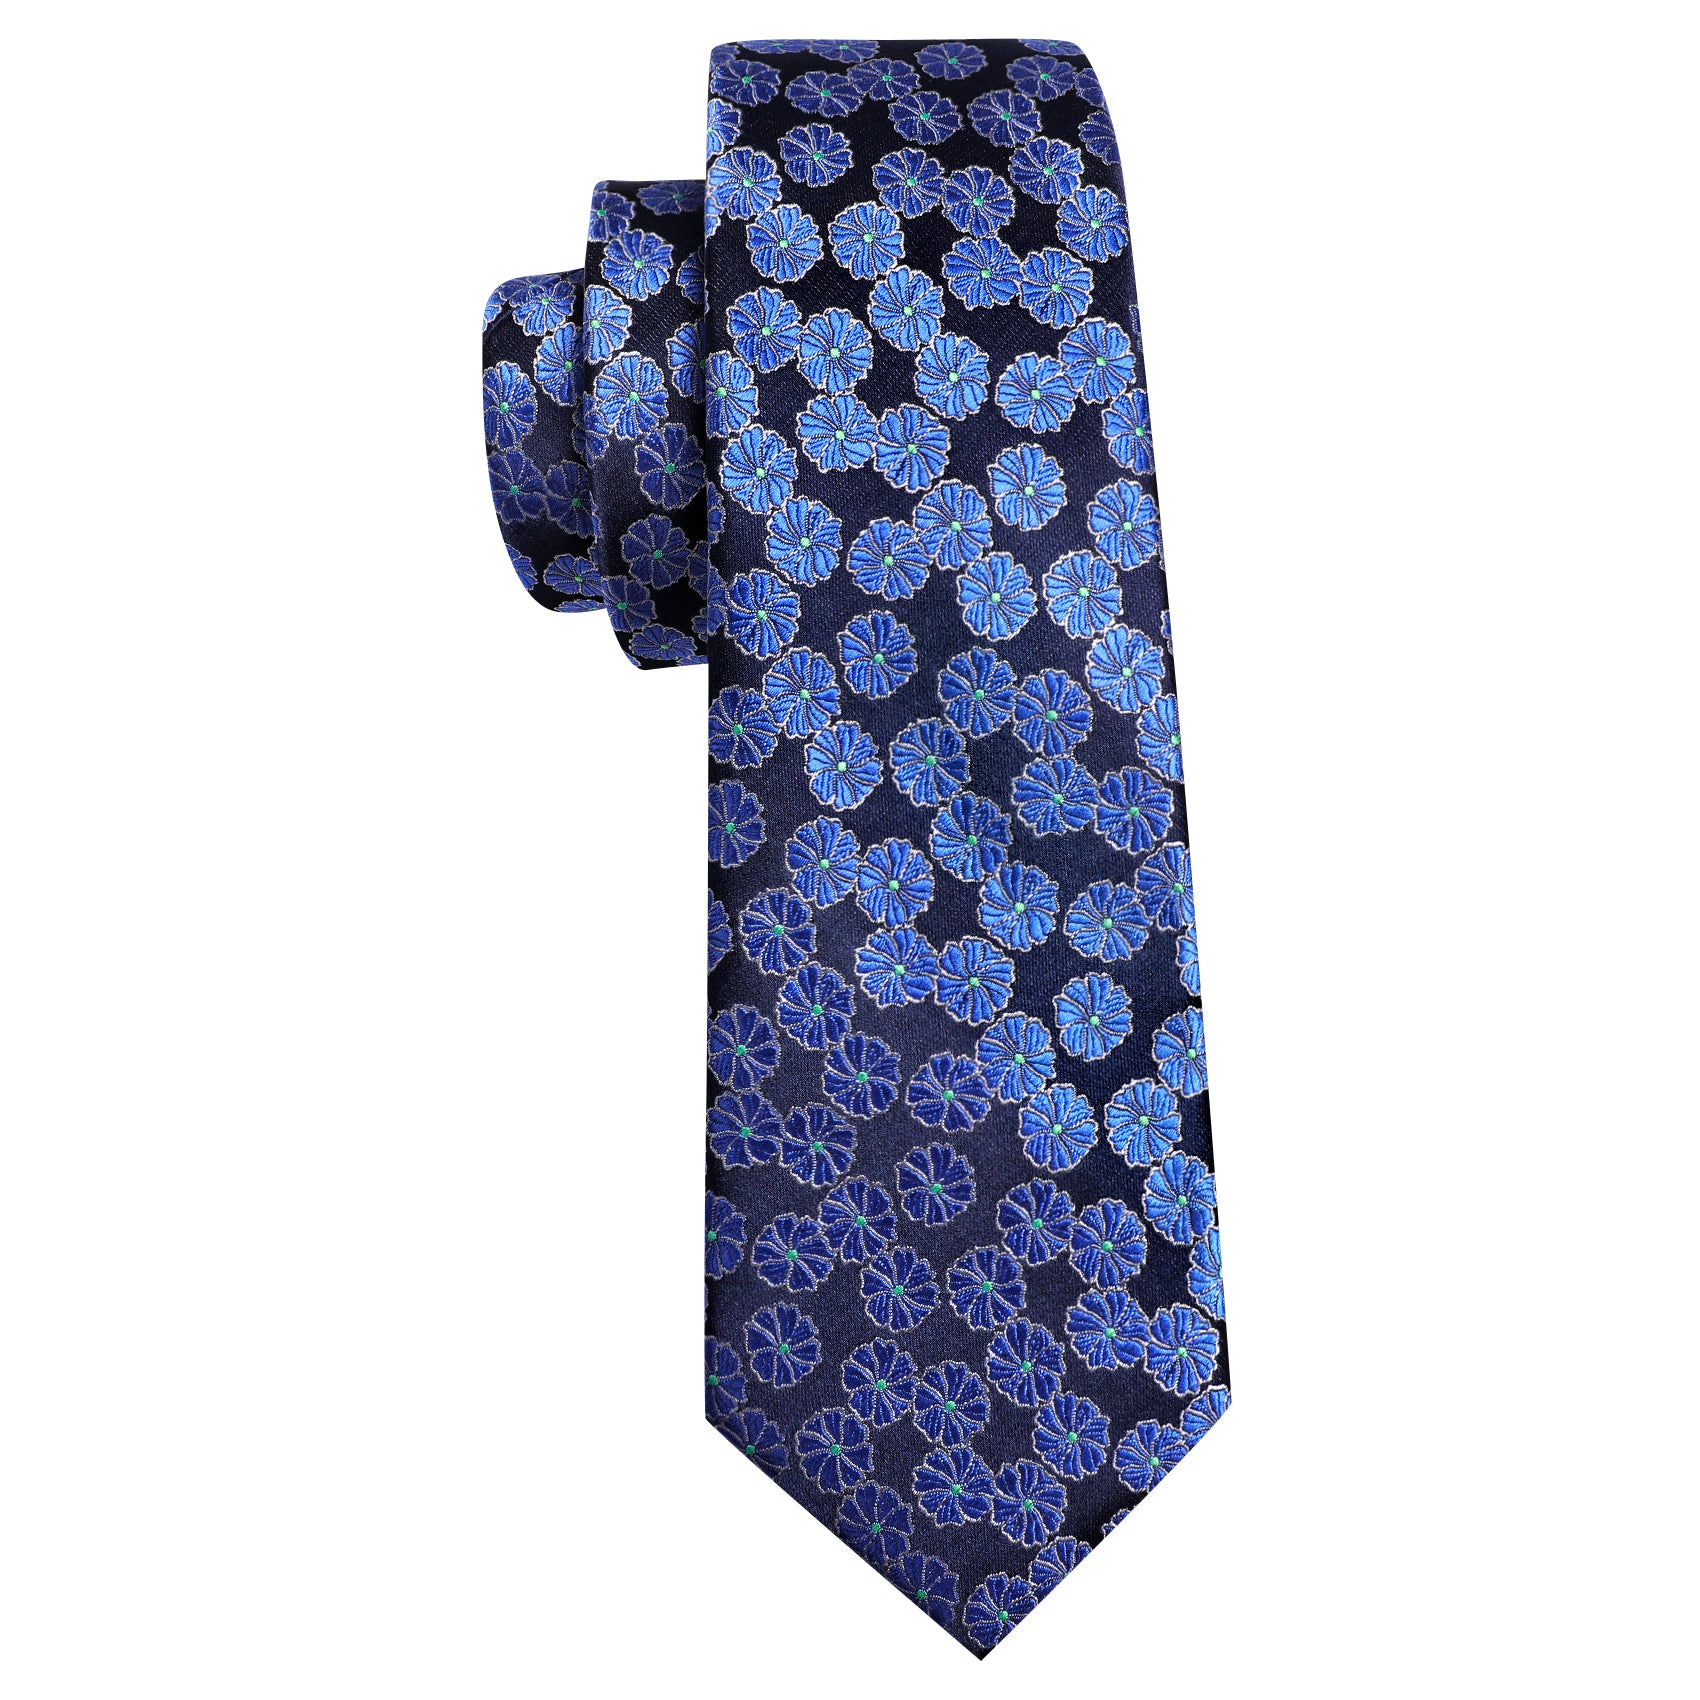 Black Blue Flower Floral Silk Tie Handkerchief Cufflinks Set